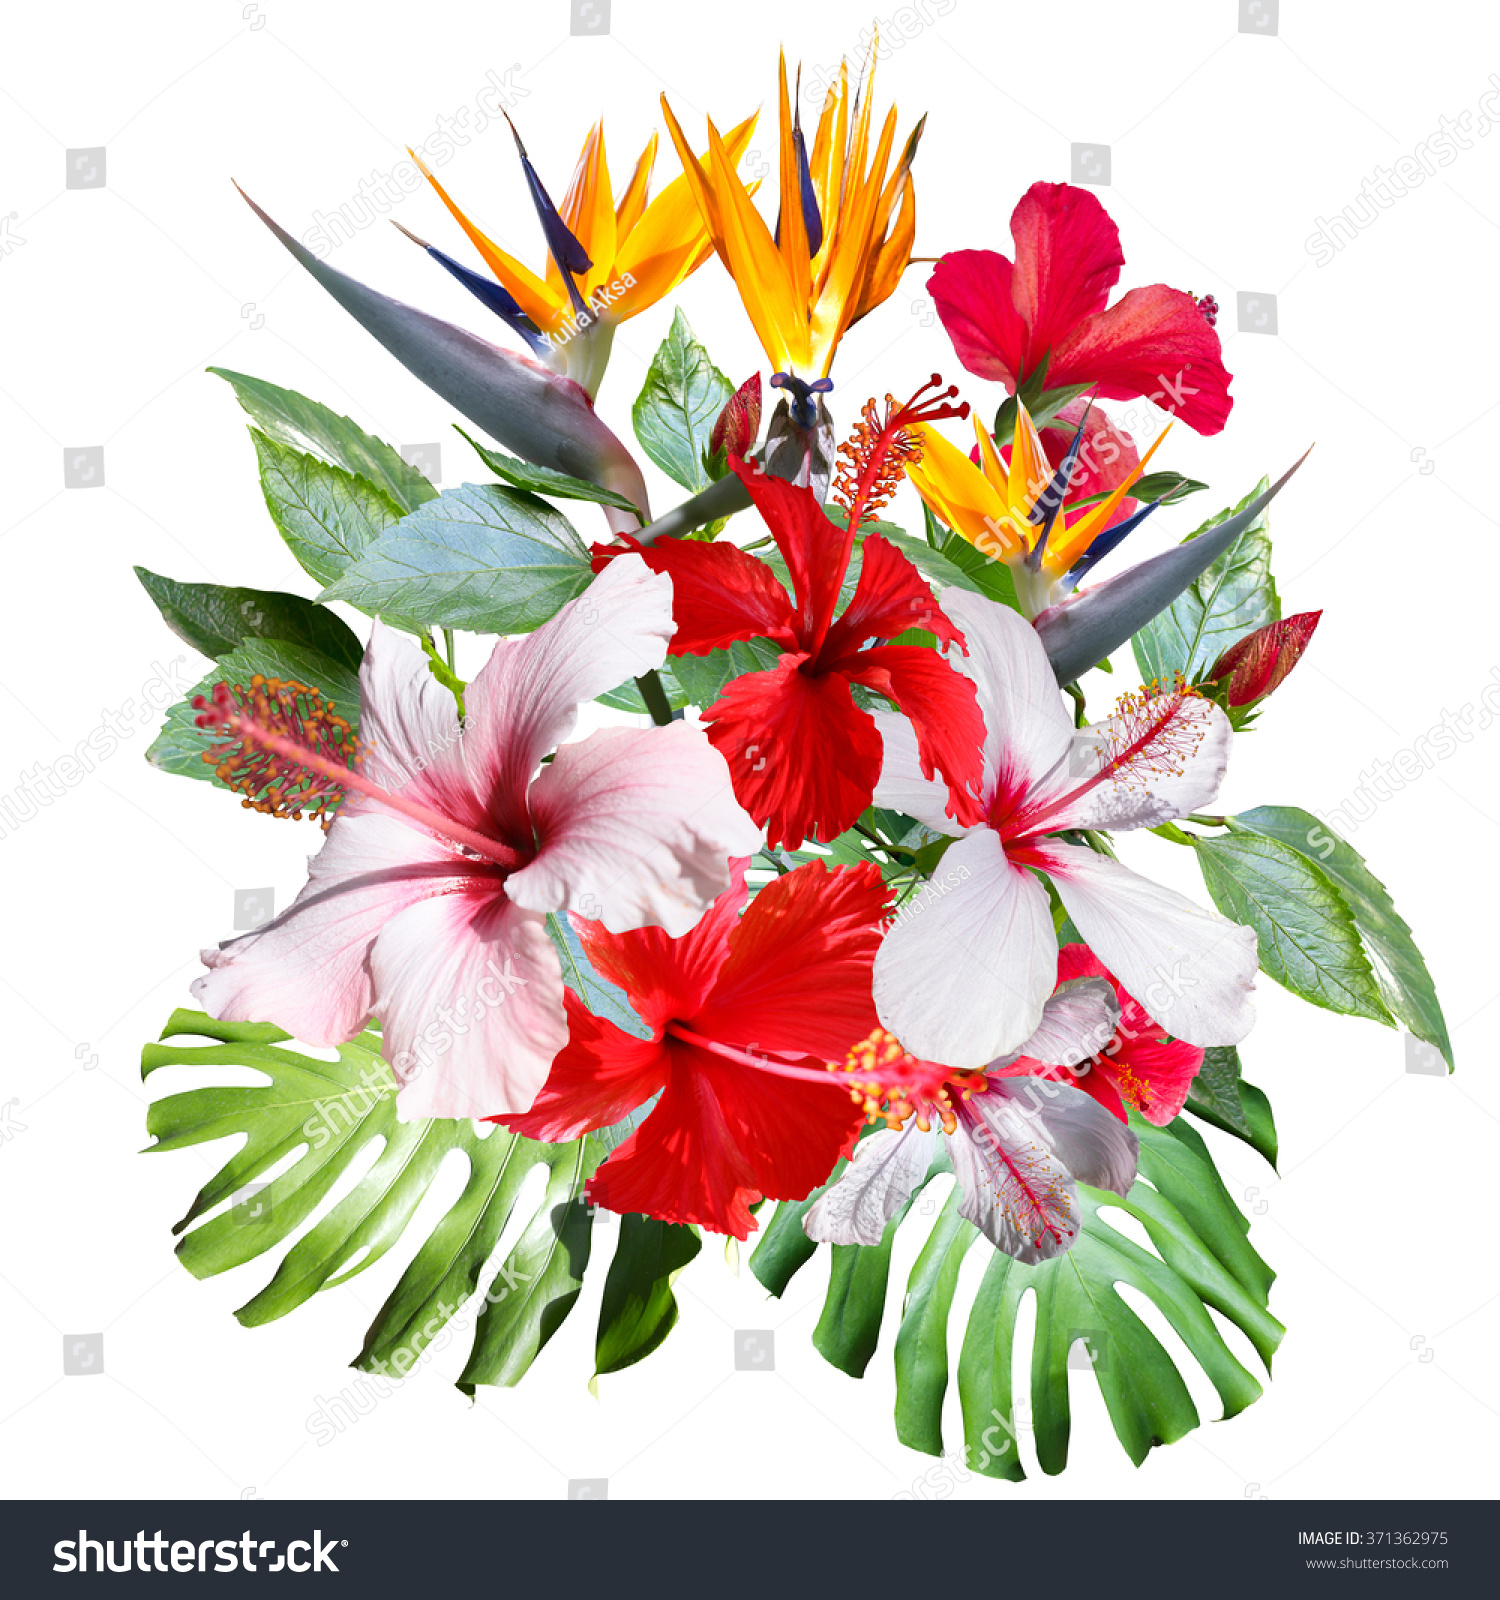 クリップアート コラージュ 美しい白い熱帯の花ハイビスカス 花と植物を持つ熱帯のブーケの接写 芸術的なフォトコラージュ とソフトフォーカスエフェクト のイラスト素材